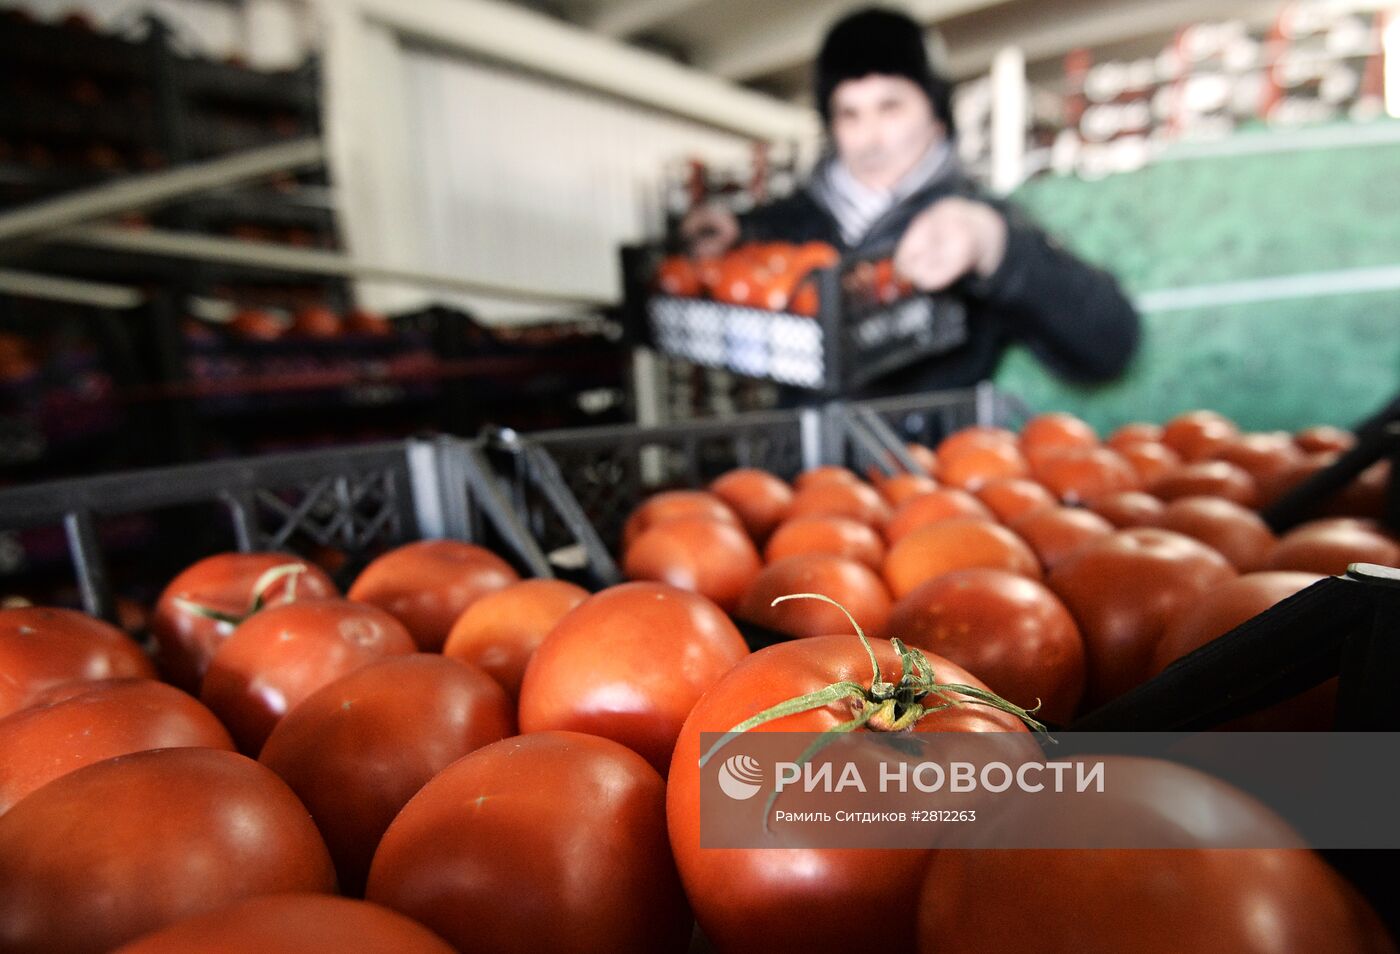 Продажа продуктов из Сирии в Москве